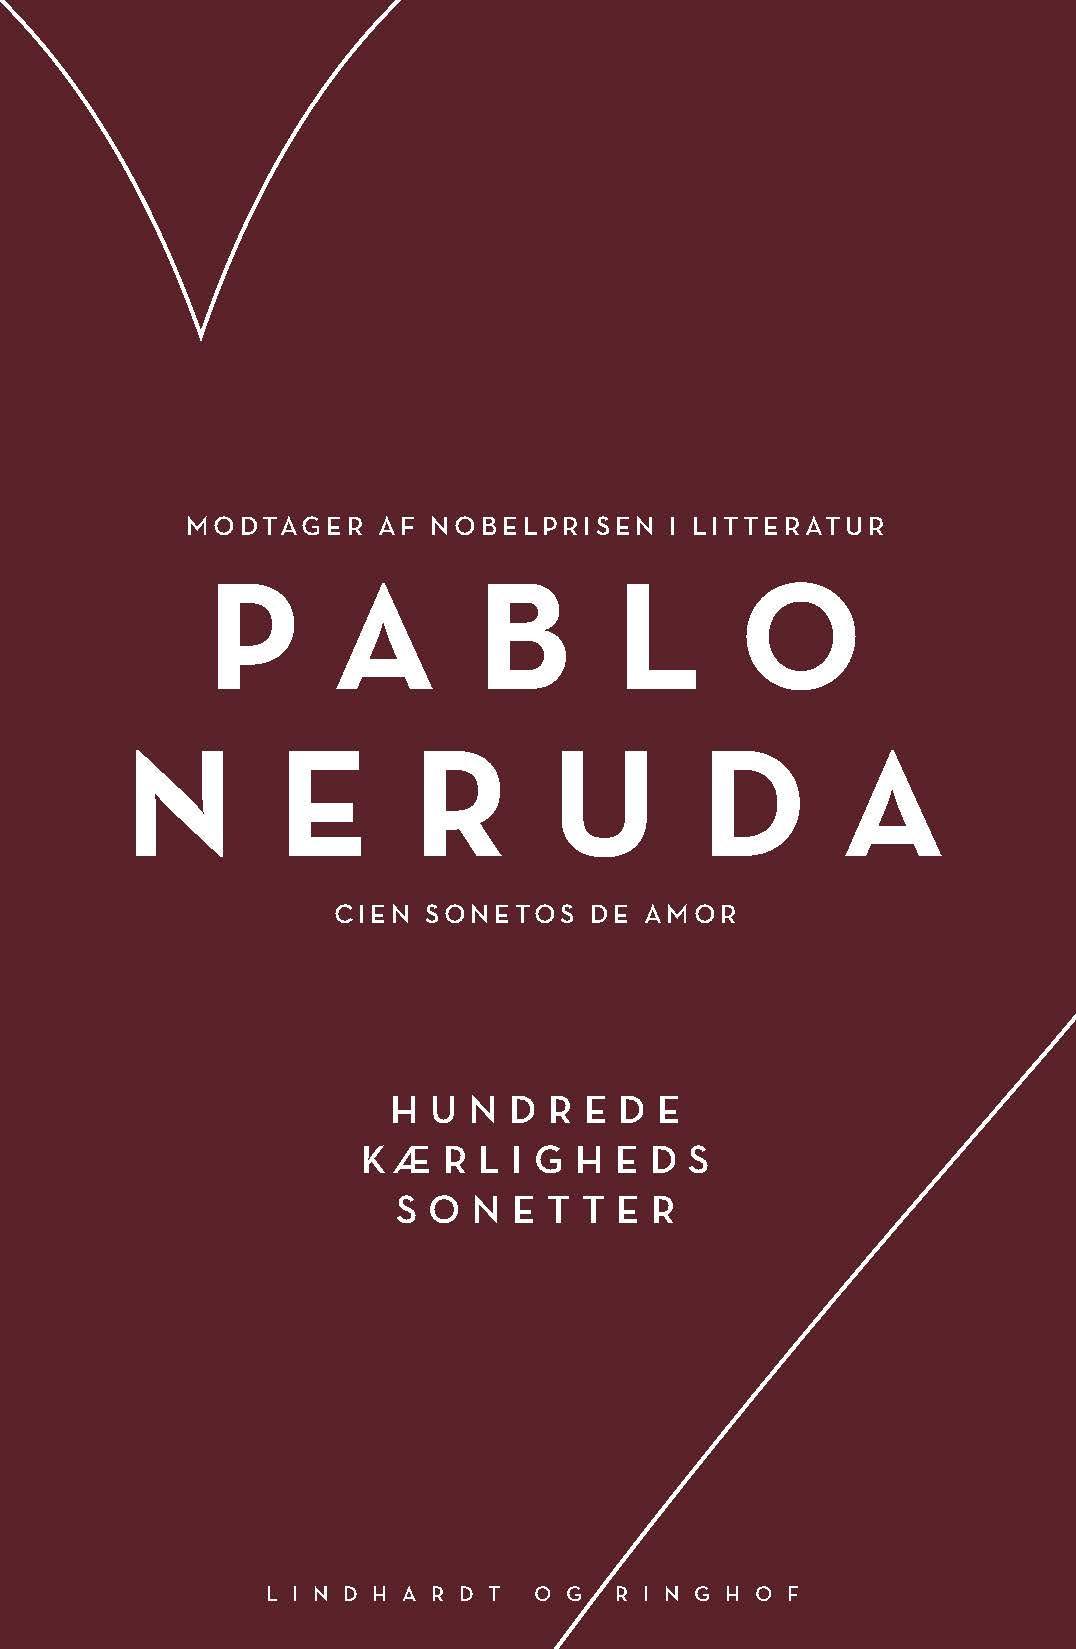 Pablo Neruda. Et poetisk og politisk ikon verden over